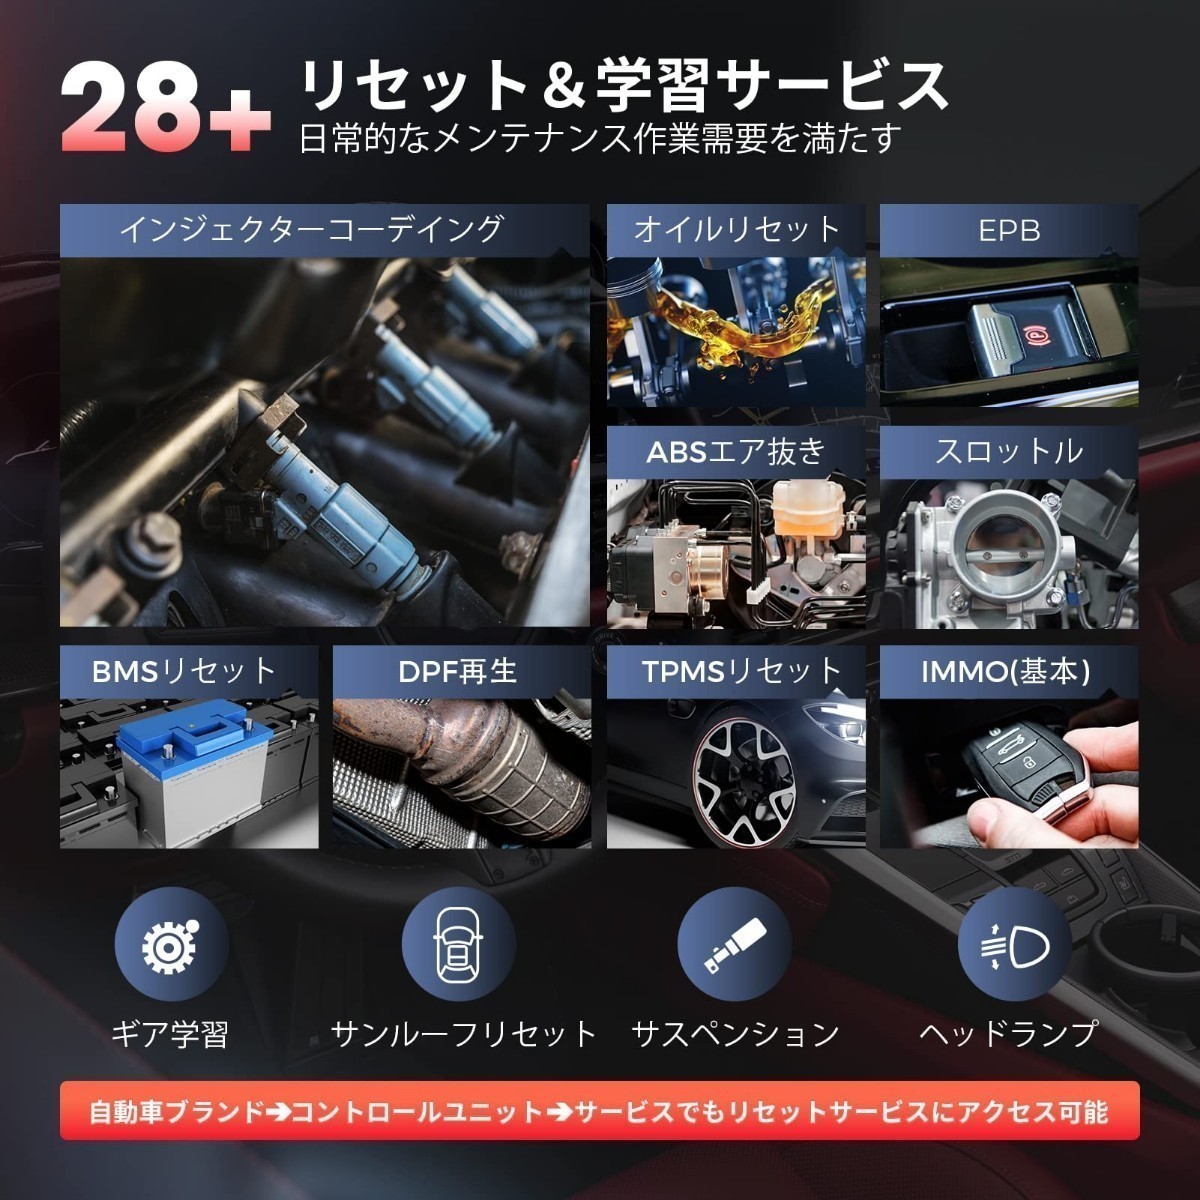 新品・日本語化済モデル 最新版 Autel MK808S OBD2 診断機 輸入車 国産車 軽自動車 ハイブリッド スキャンツール アクティブテスト DPF再生_画像4